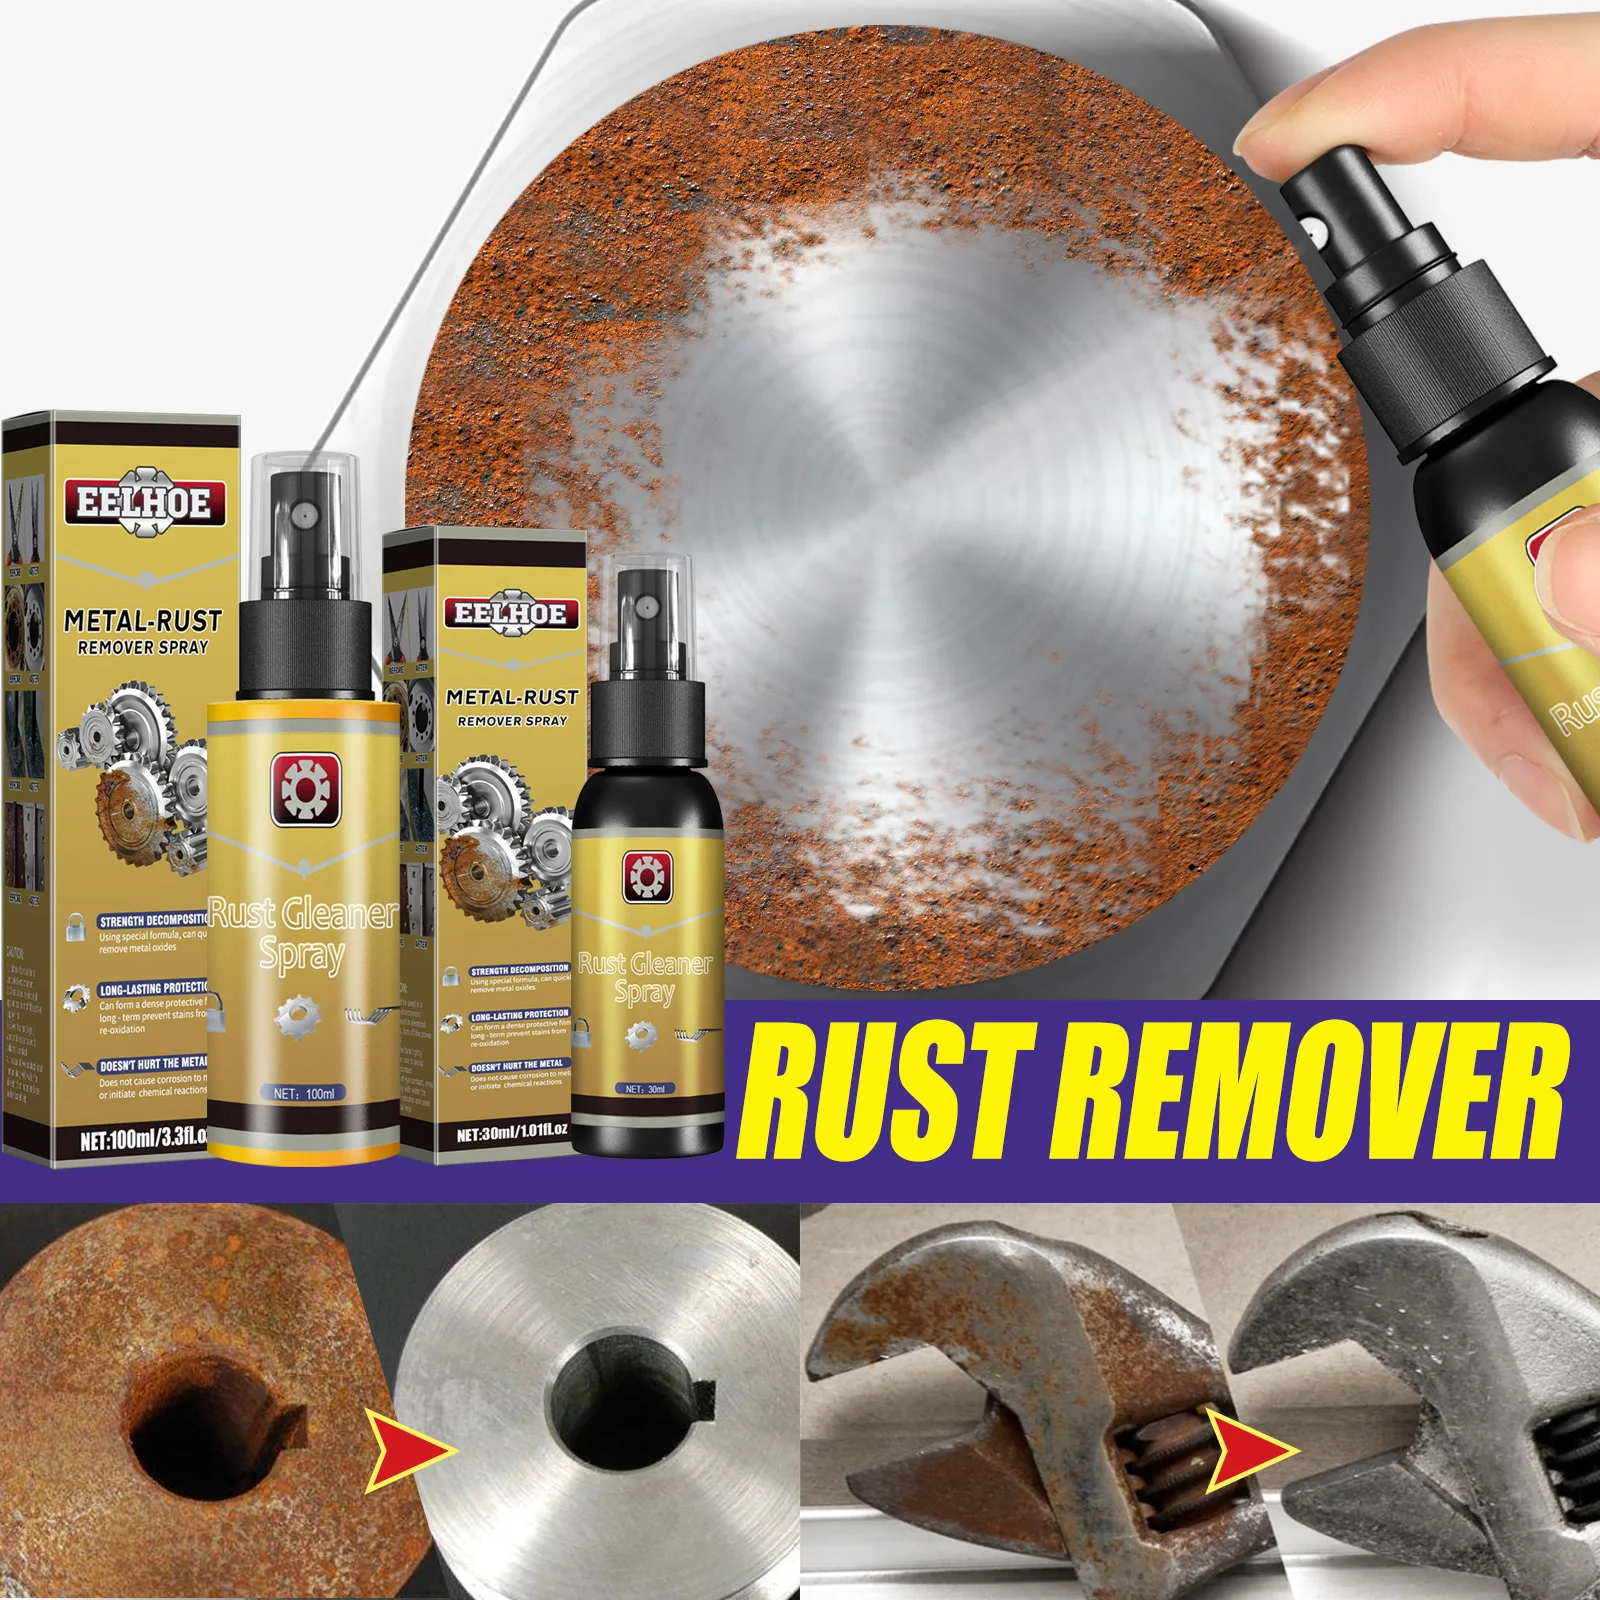 Rust cleaner spray как пользоваться фото 12